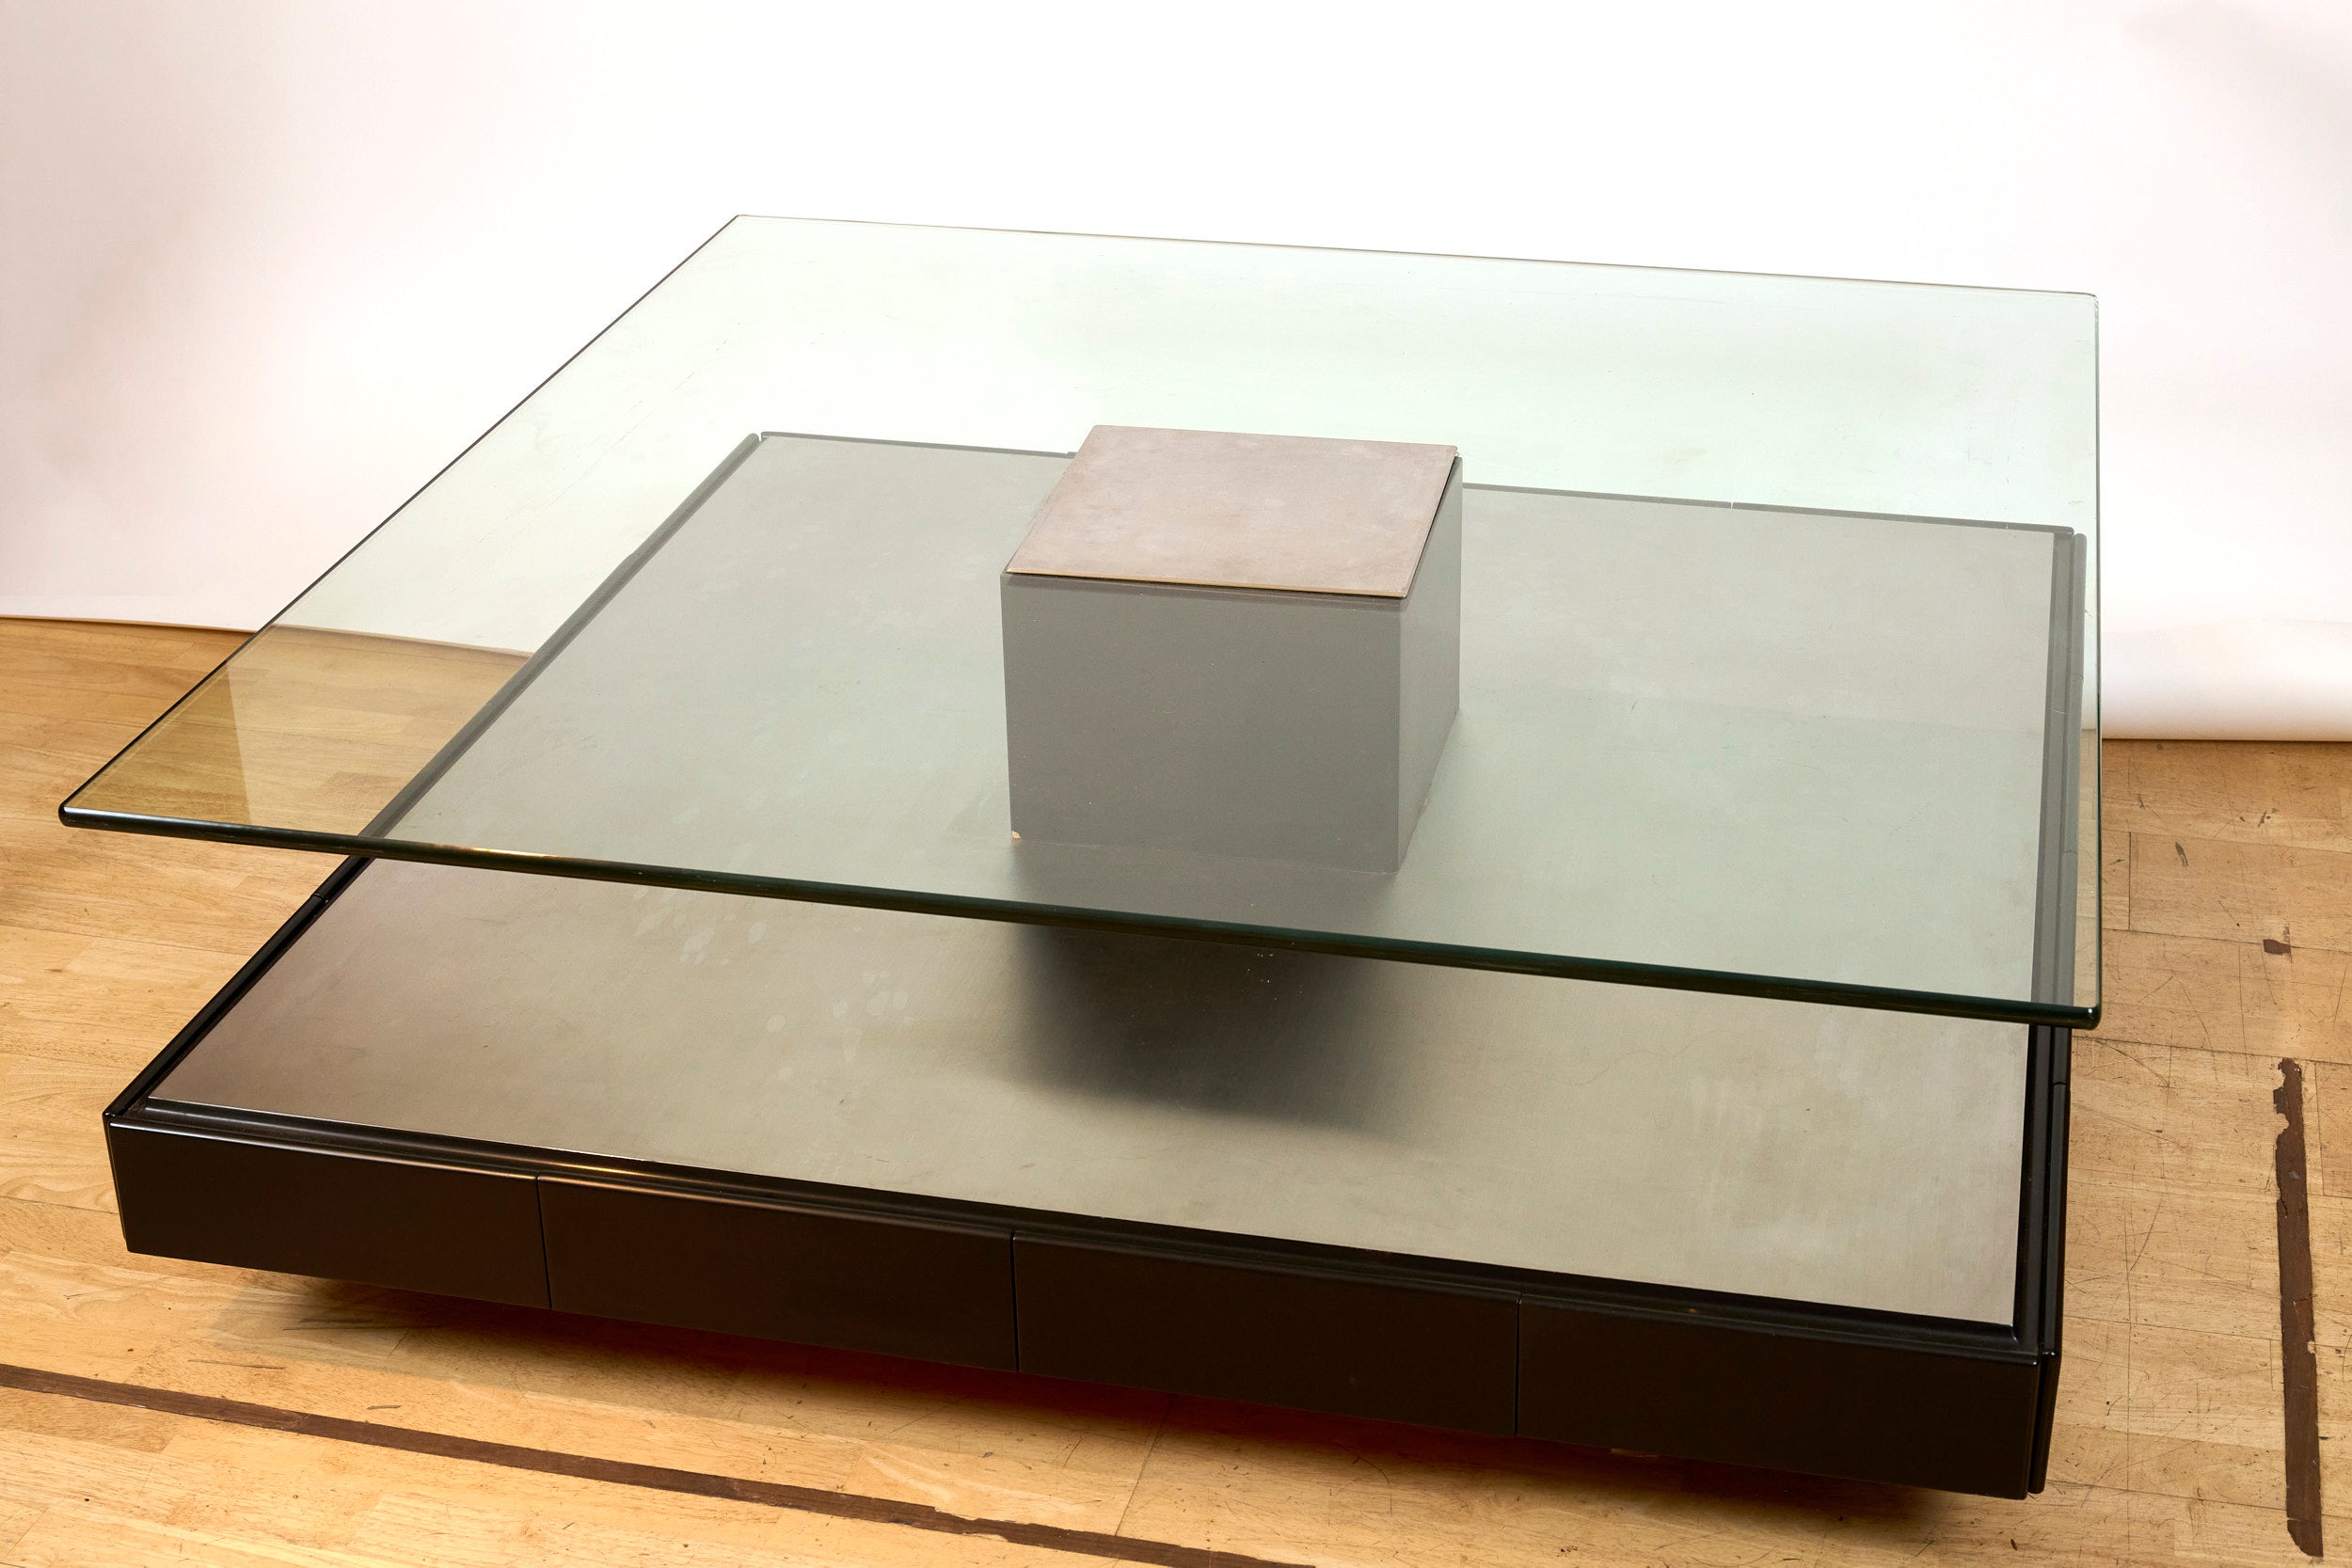 Table basse Marco Fantoni pour Tecno c1970.

Superbe table basse minimaliste avec une base en métal brossé sur bois contenant huit tiroirs, une tablette en verre épais avec insert en métal brossé. Huit roulettes sous la base pour faciliter le